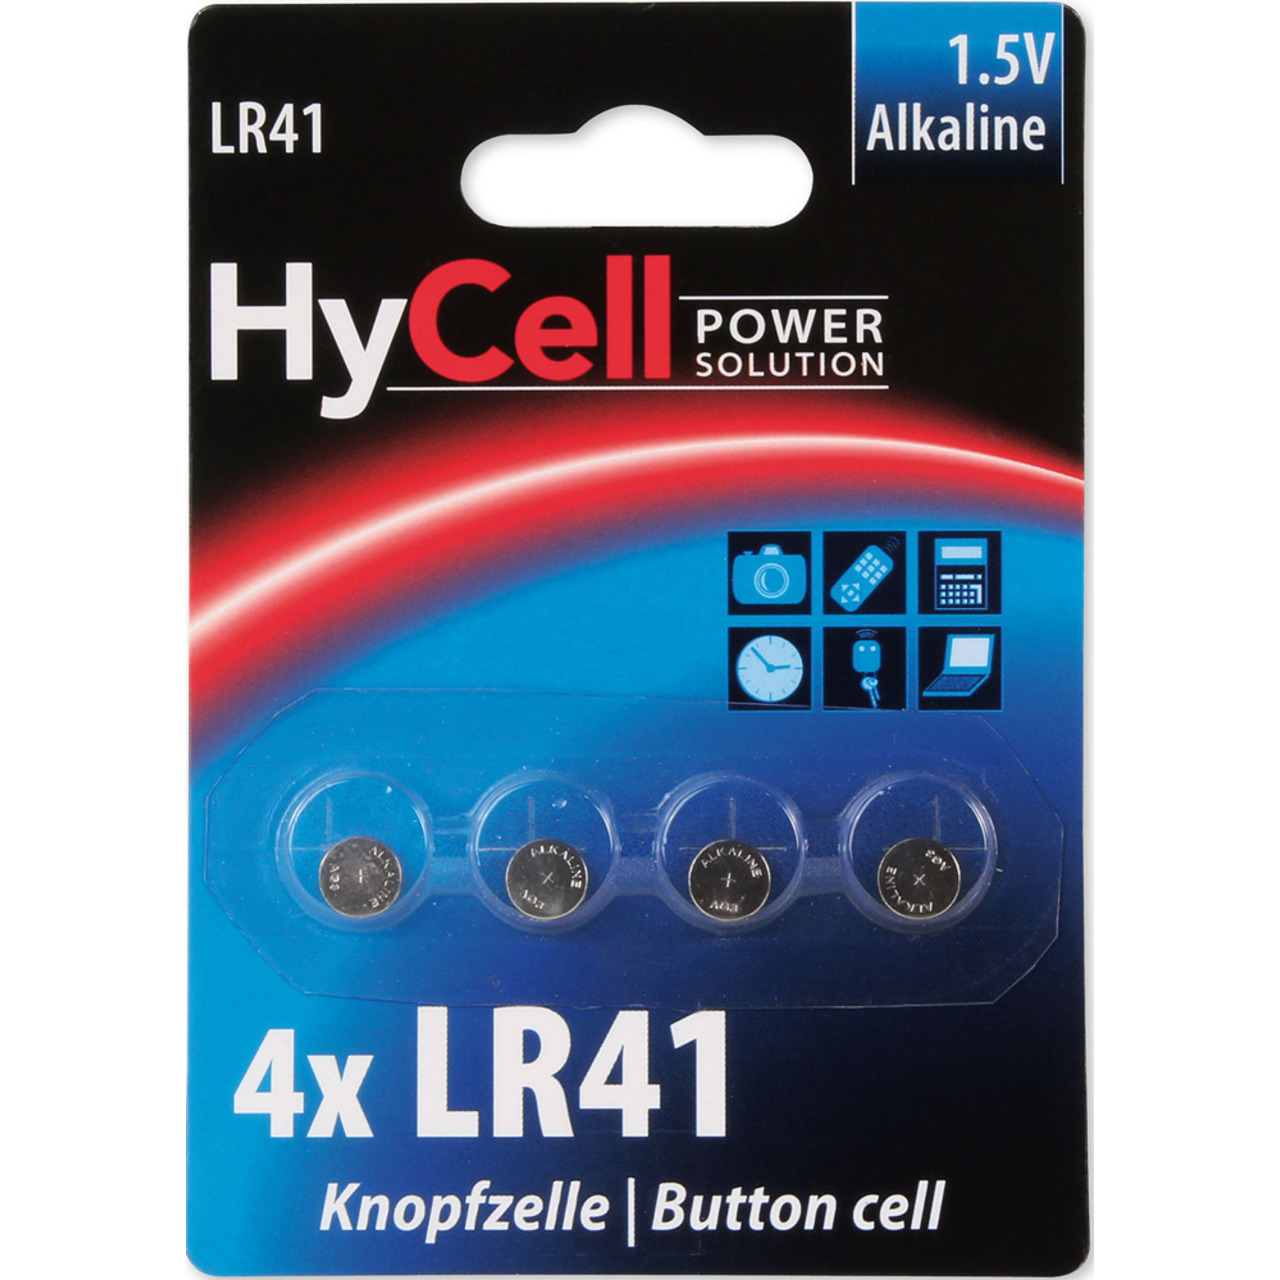 Hycell Alkaline-Knopfzelle LR 41- 1-5 V- 4er-Blister